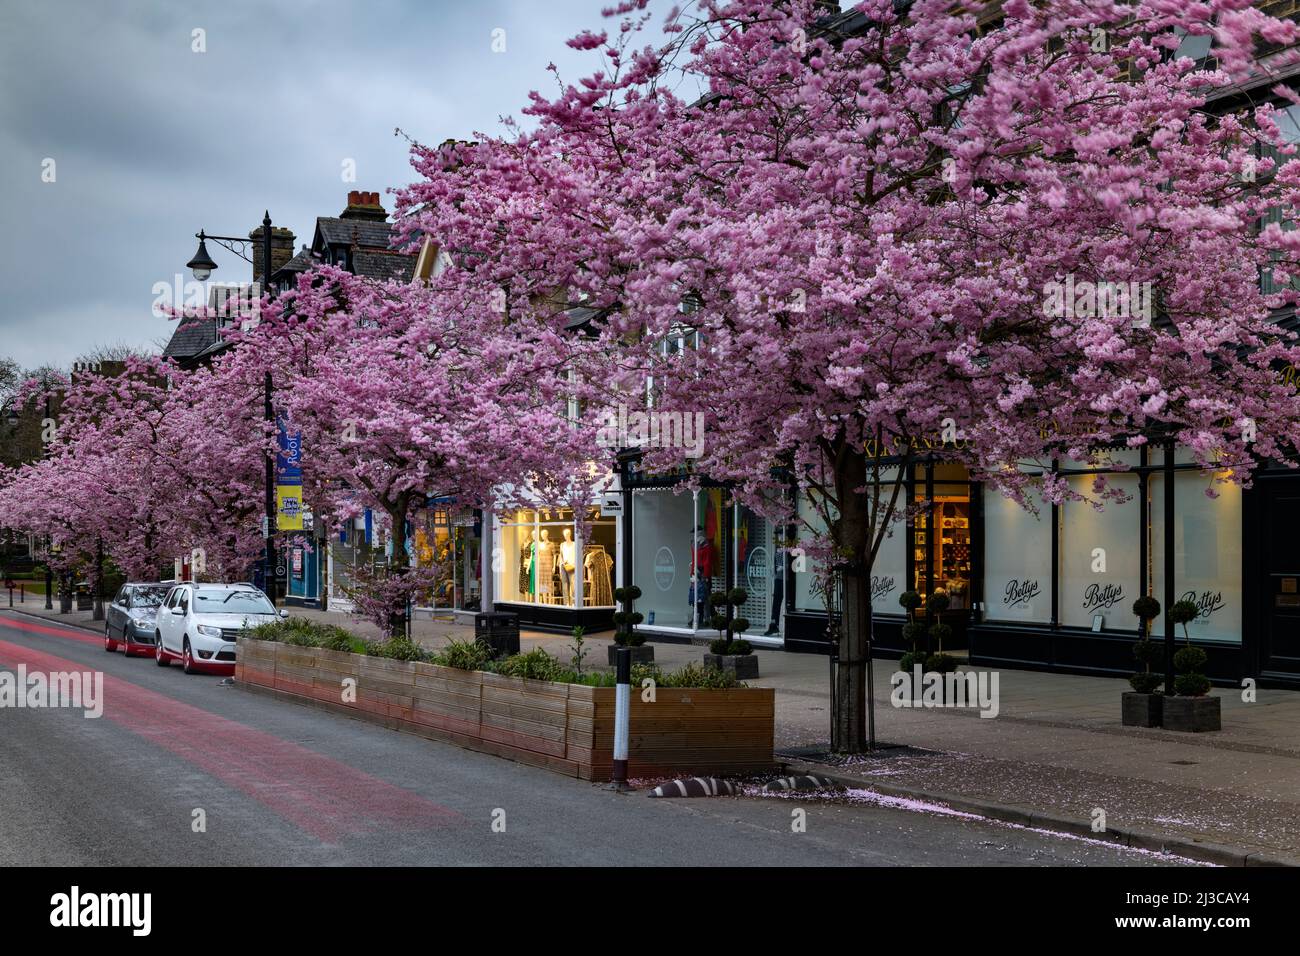 Pintoresco centro de la ciudad de primavera (hermosos y coloridos cerezos en flor, restaurante-cafetería frente a la tienda, por la noche) - The Grove, Ilkley, Yorkshire, Inglaterra, Reino Unido. Foto de stock